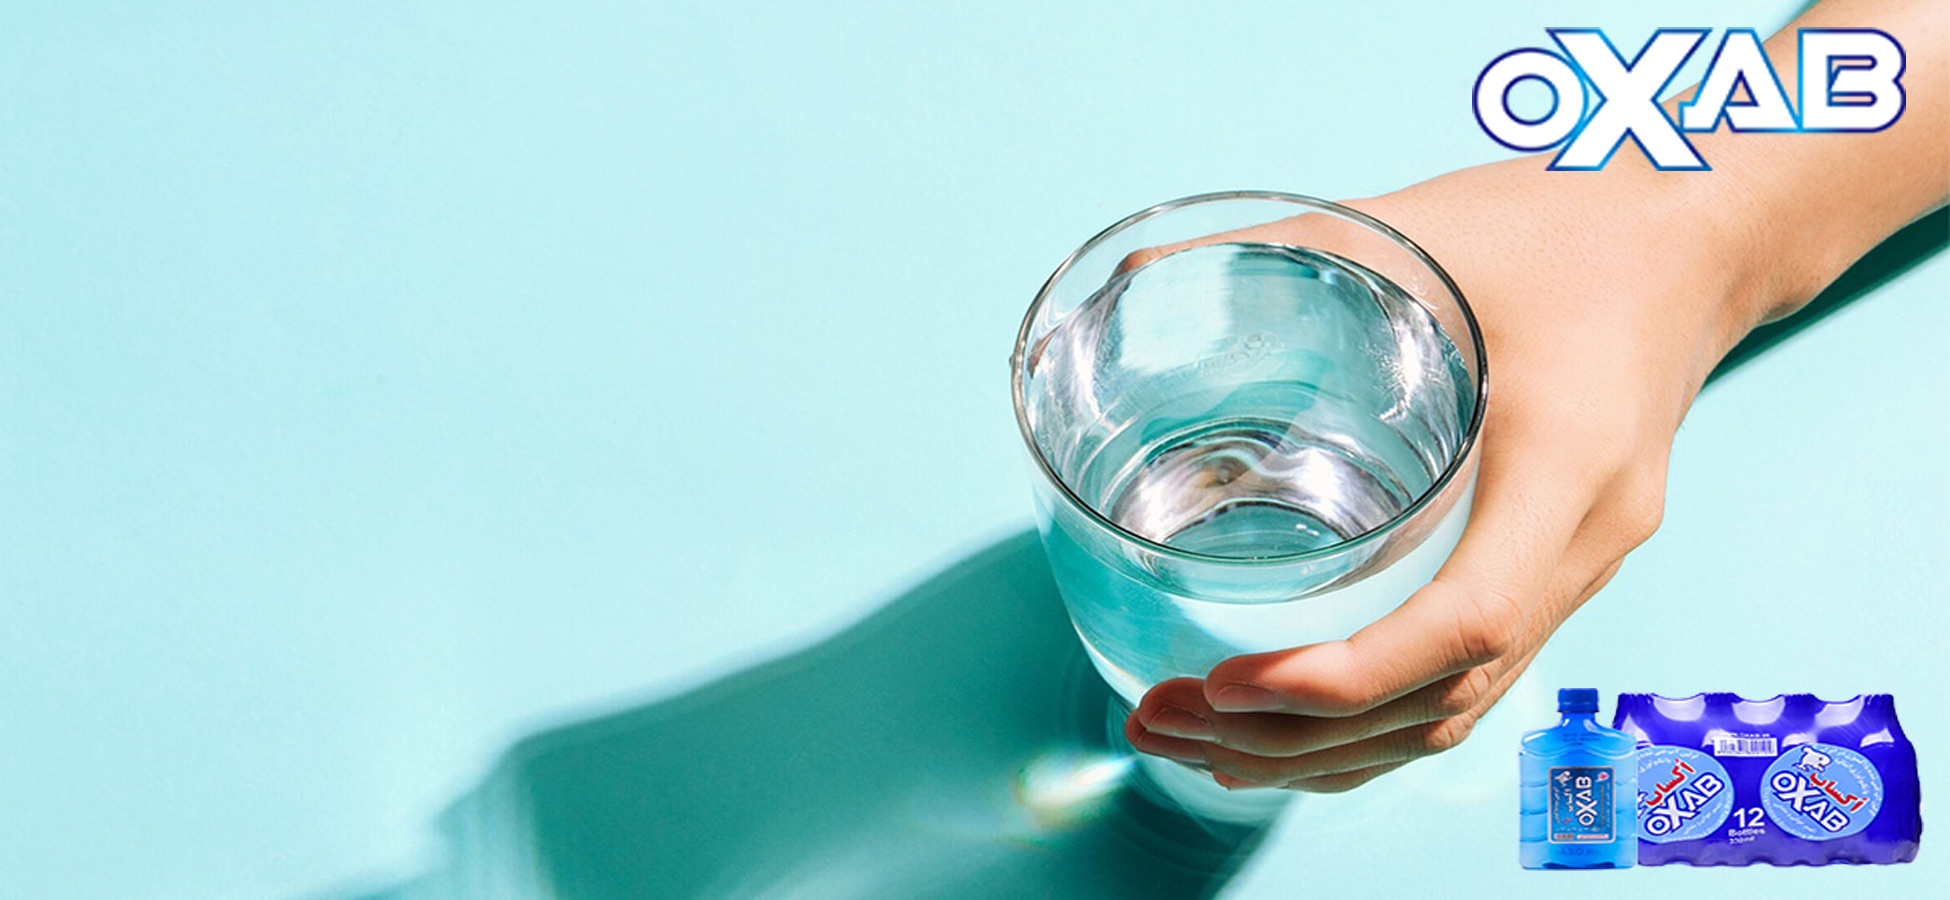 آب آشامیدنی تا چند روز قابل نوشیدن است؟ خرید آب